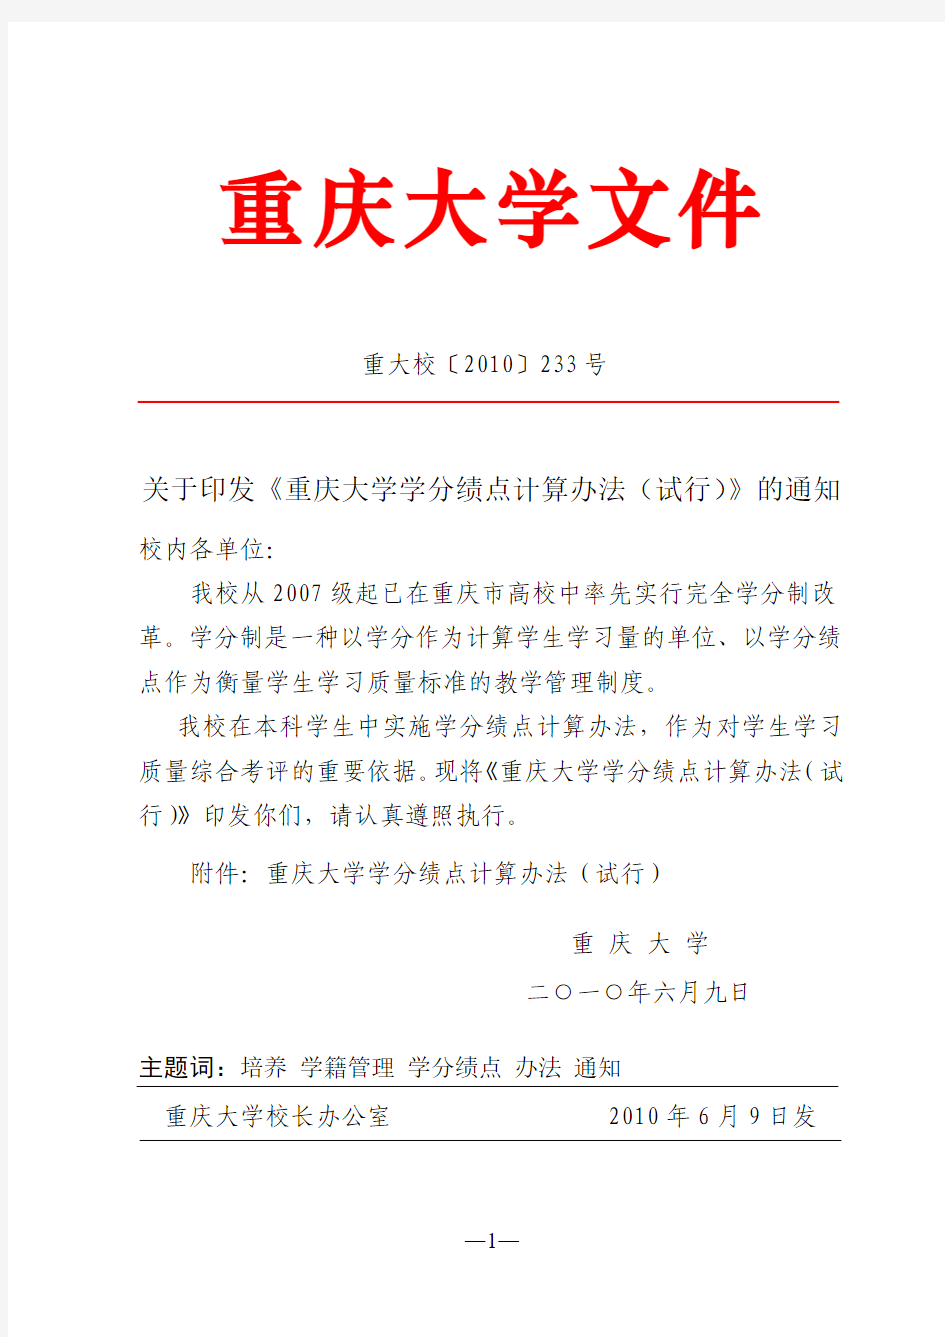 2015—2016学年最新重庆大学学分绩点计算办法(试行)